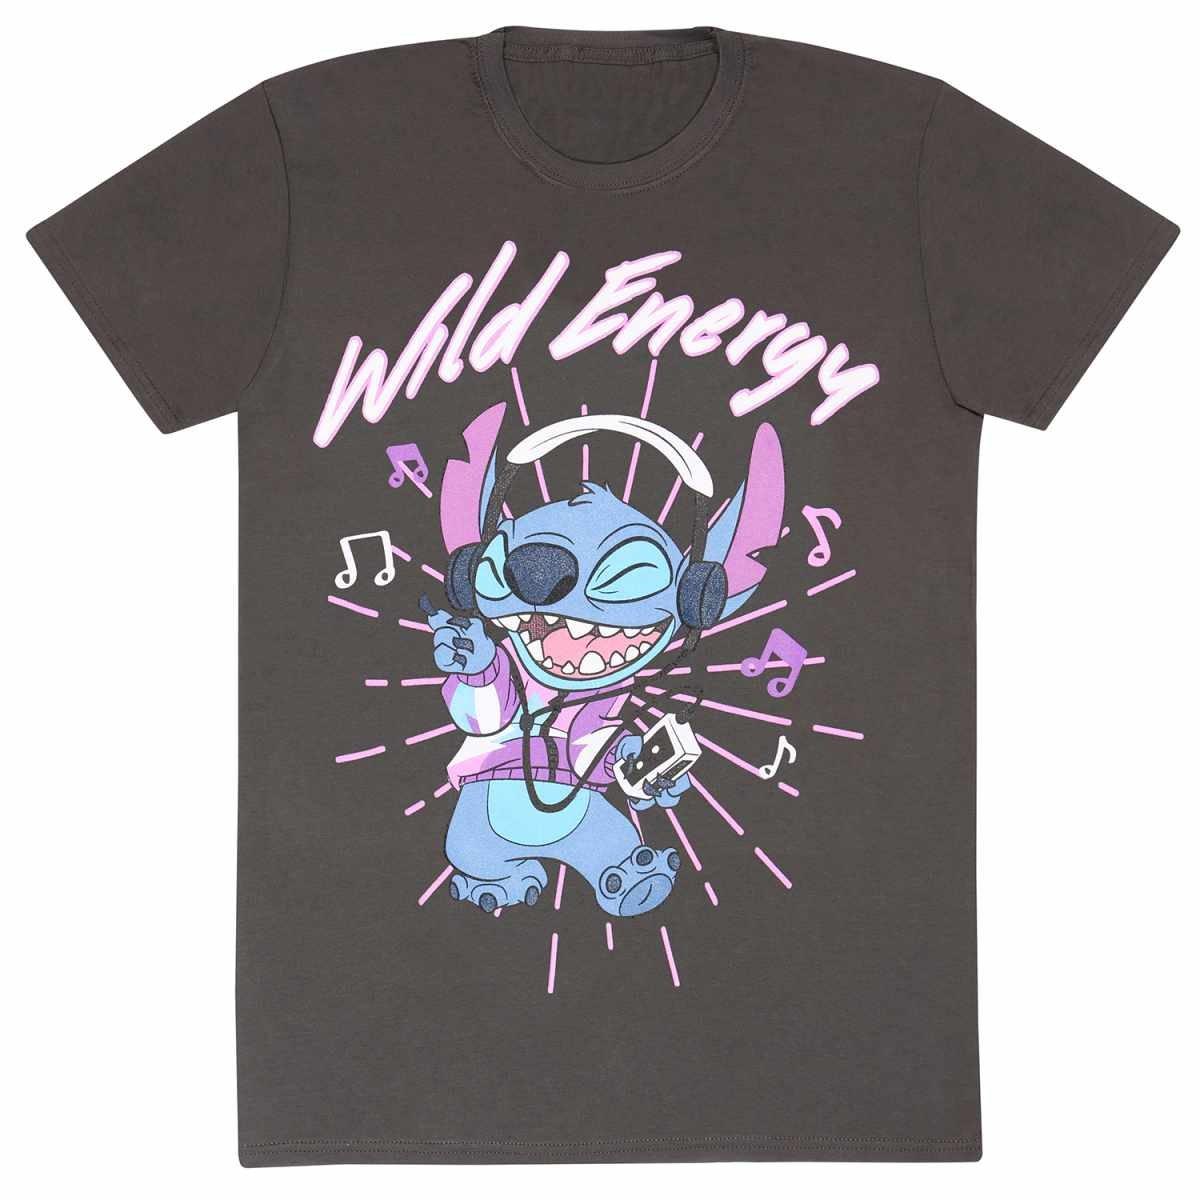 Wild Energy Tshirt Herren Charcoal Black M von Lilo & Stitch